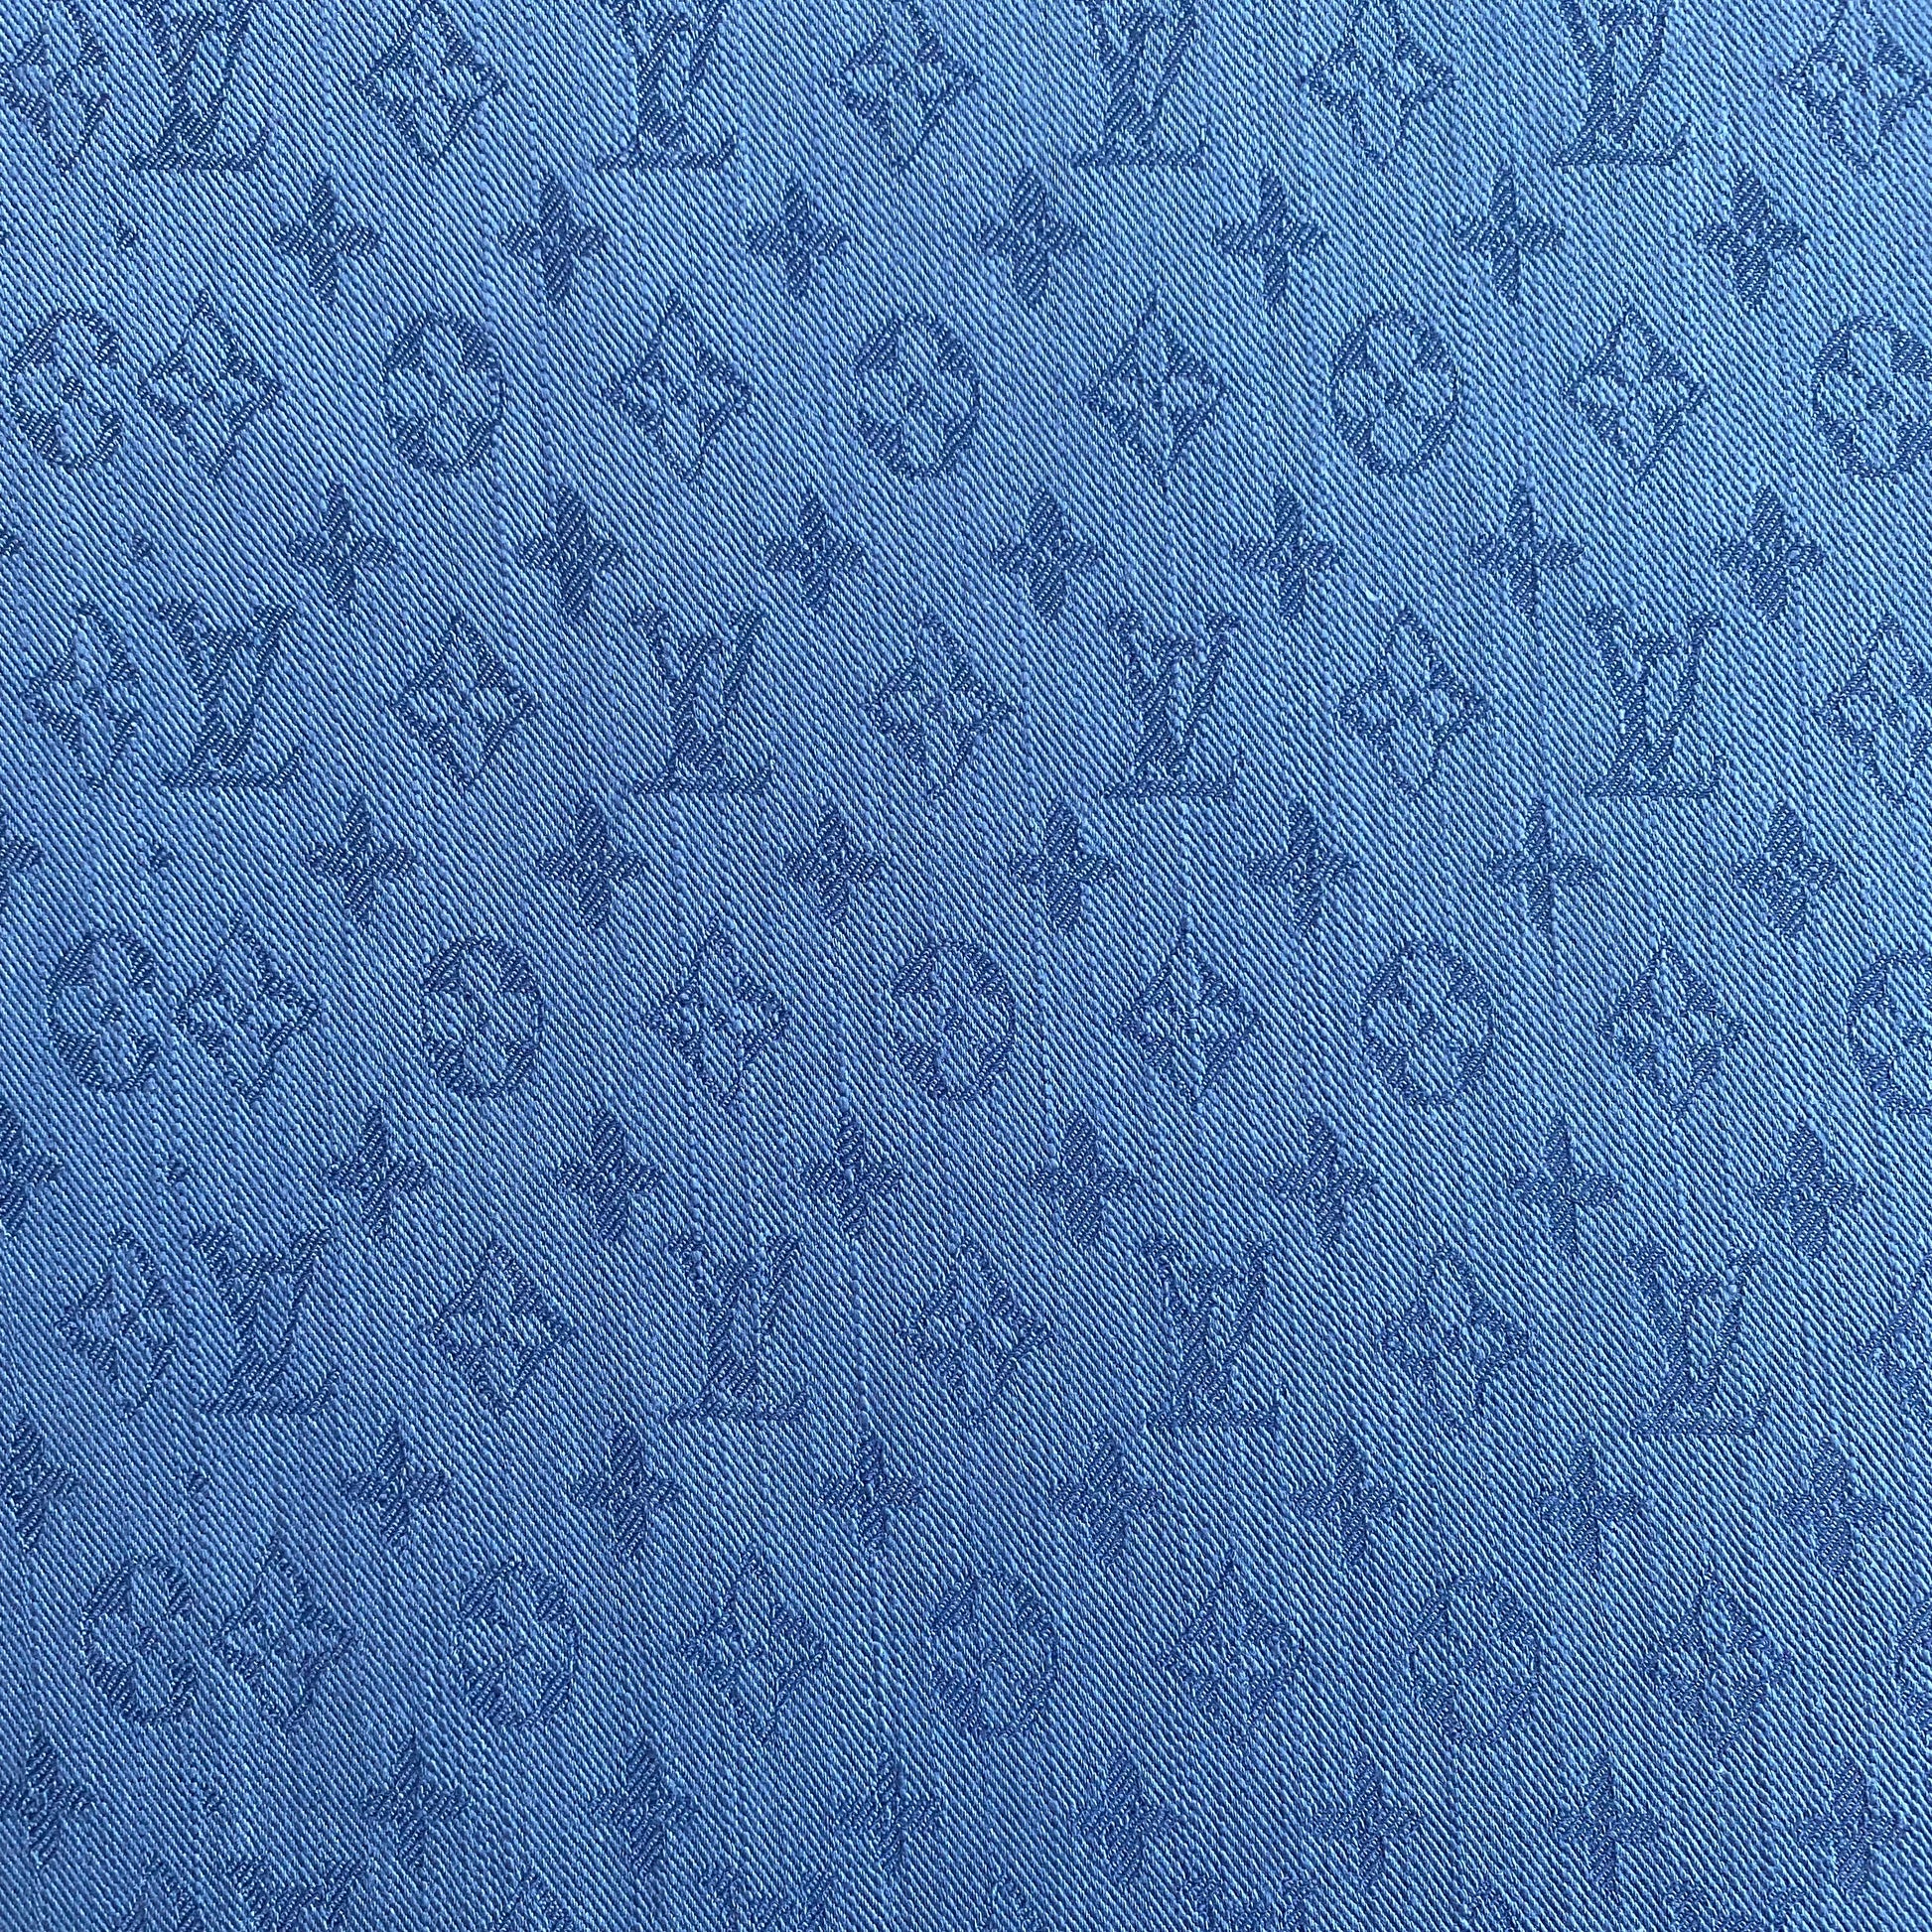 louis-vuitton monogram fabric